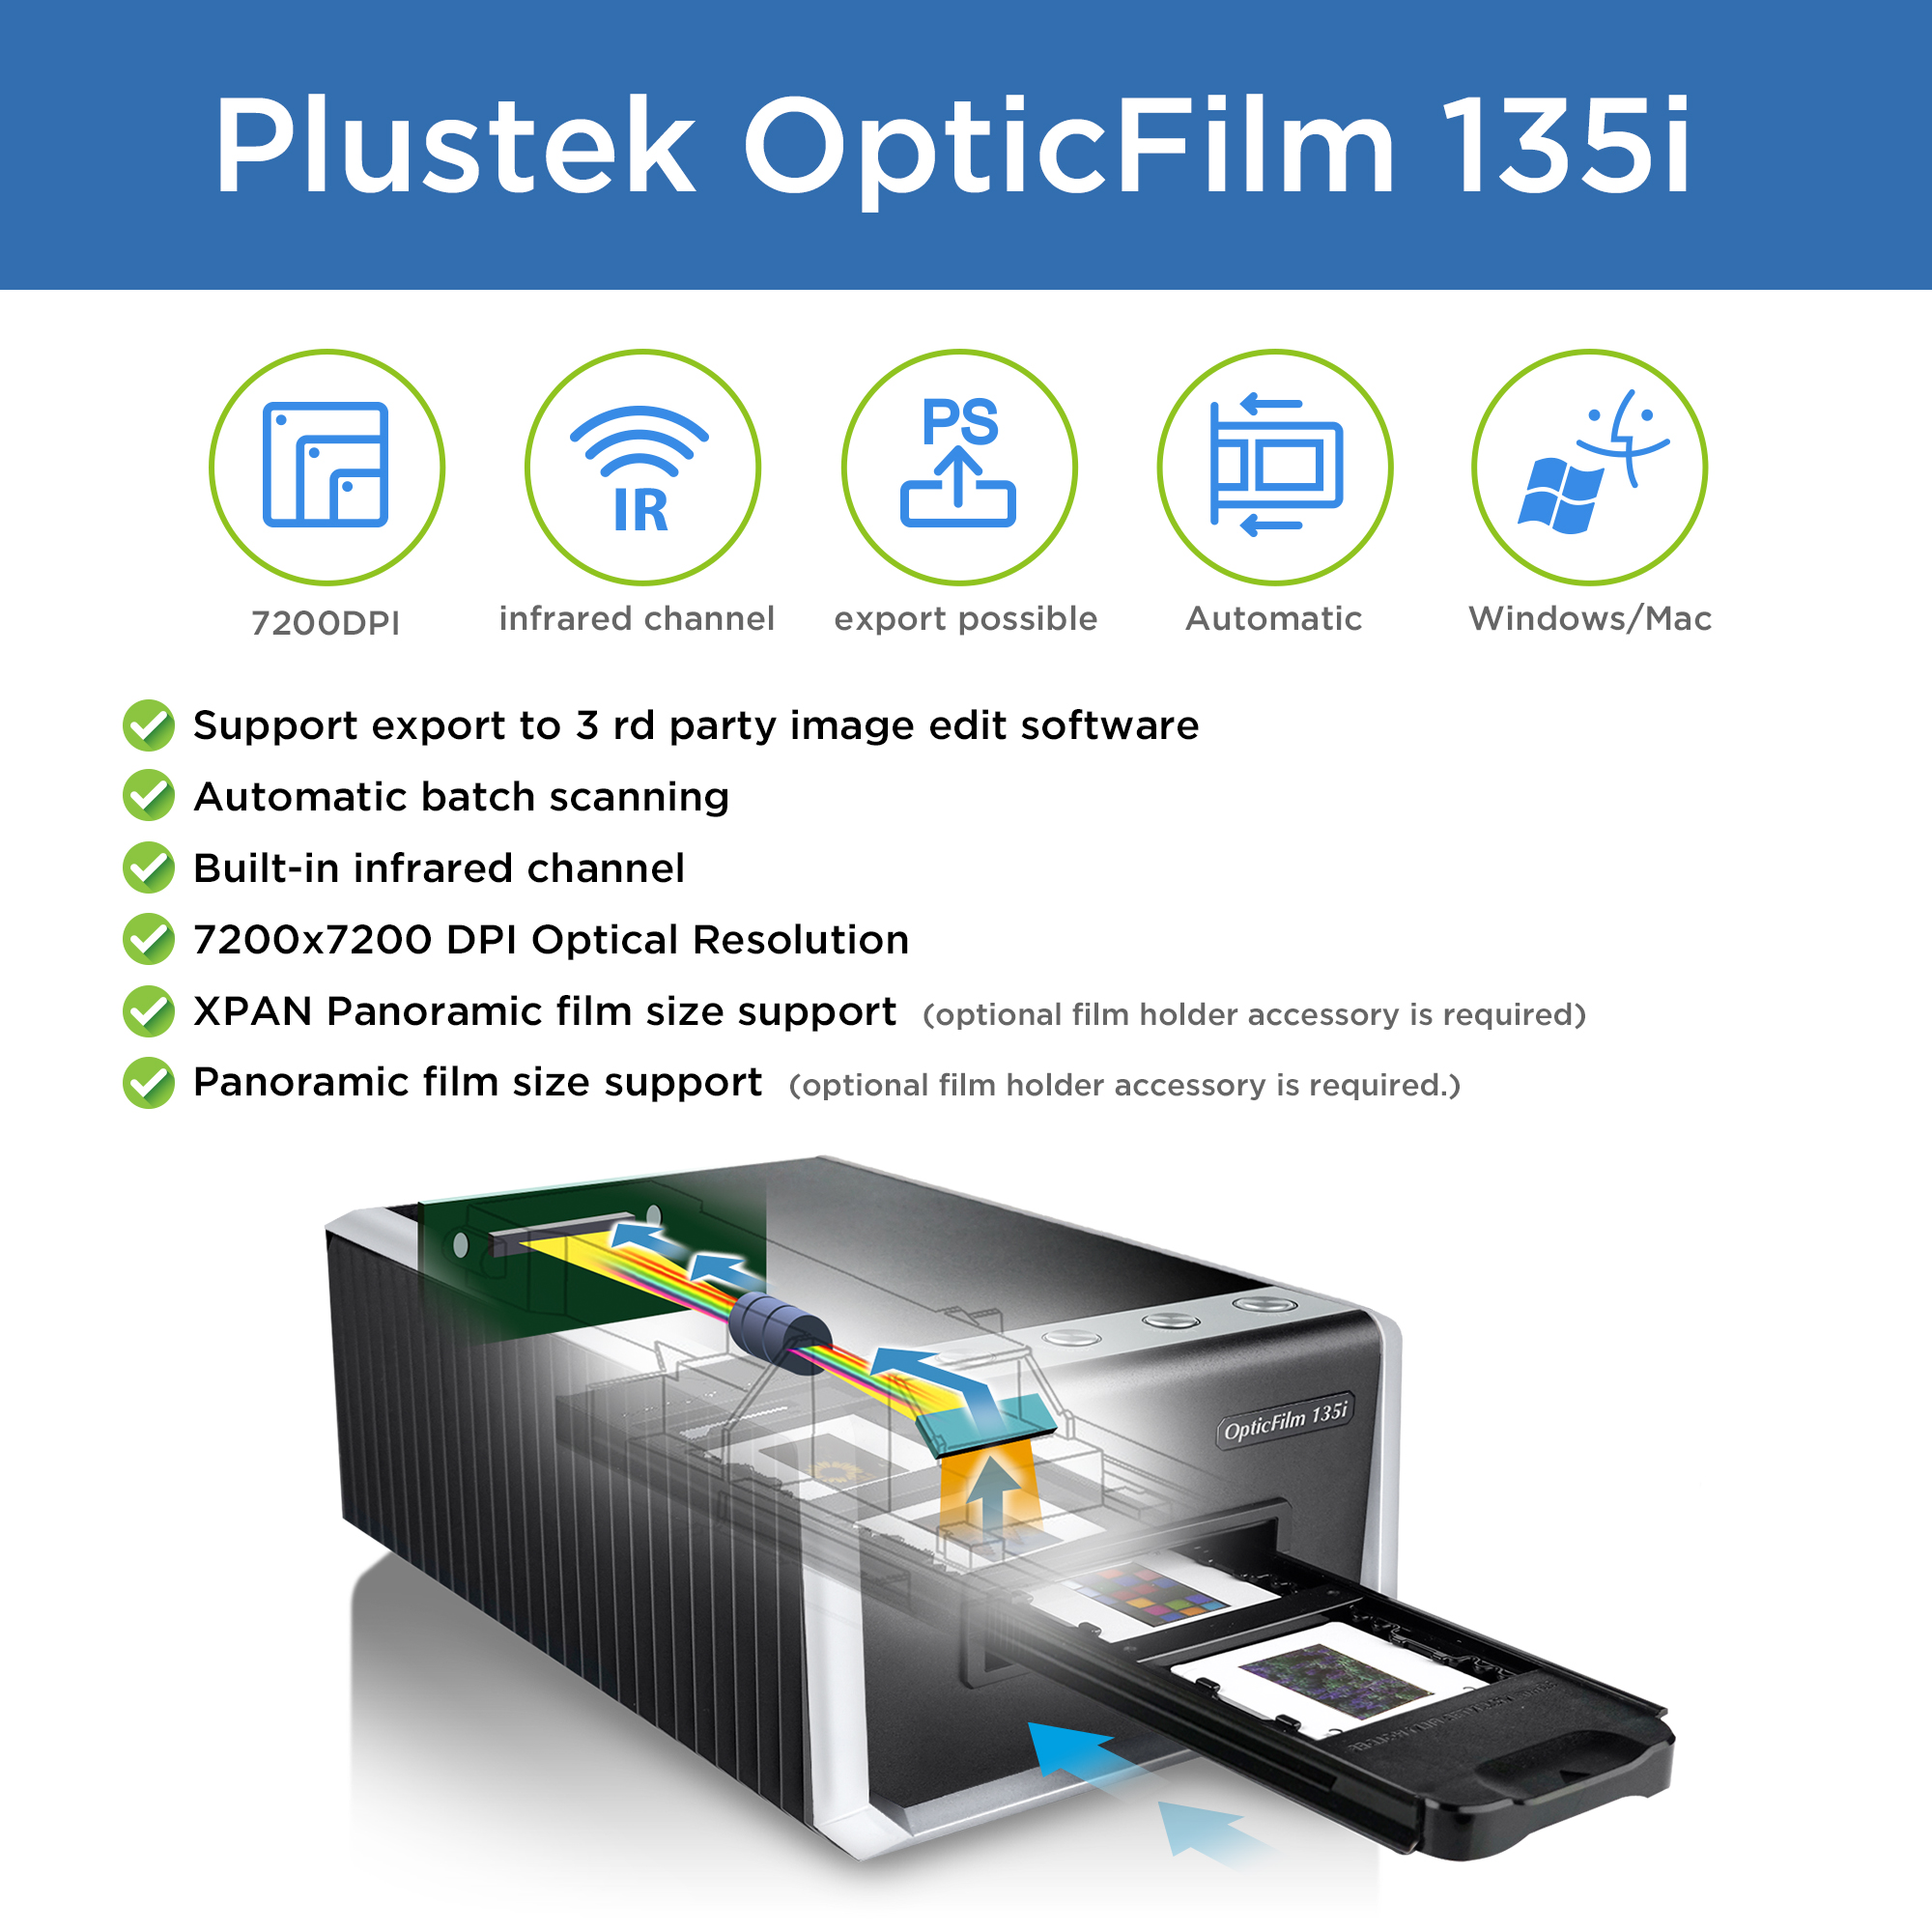 Plustek OpticFilm 135i - Automatic Film & Slide Scanner for 35mm Slides &  Film Negatives with 7200dpi resolution, Mac and Windows Support